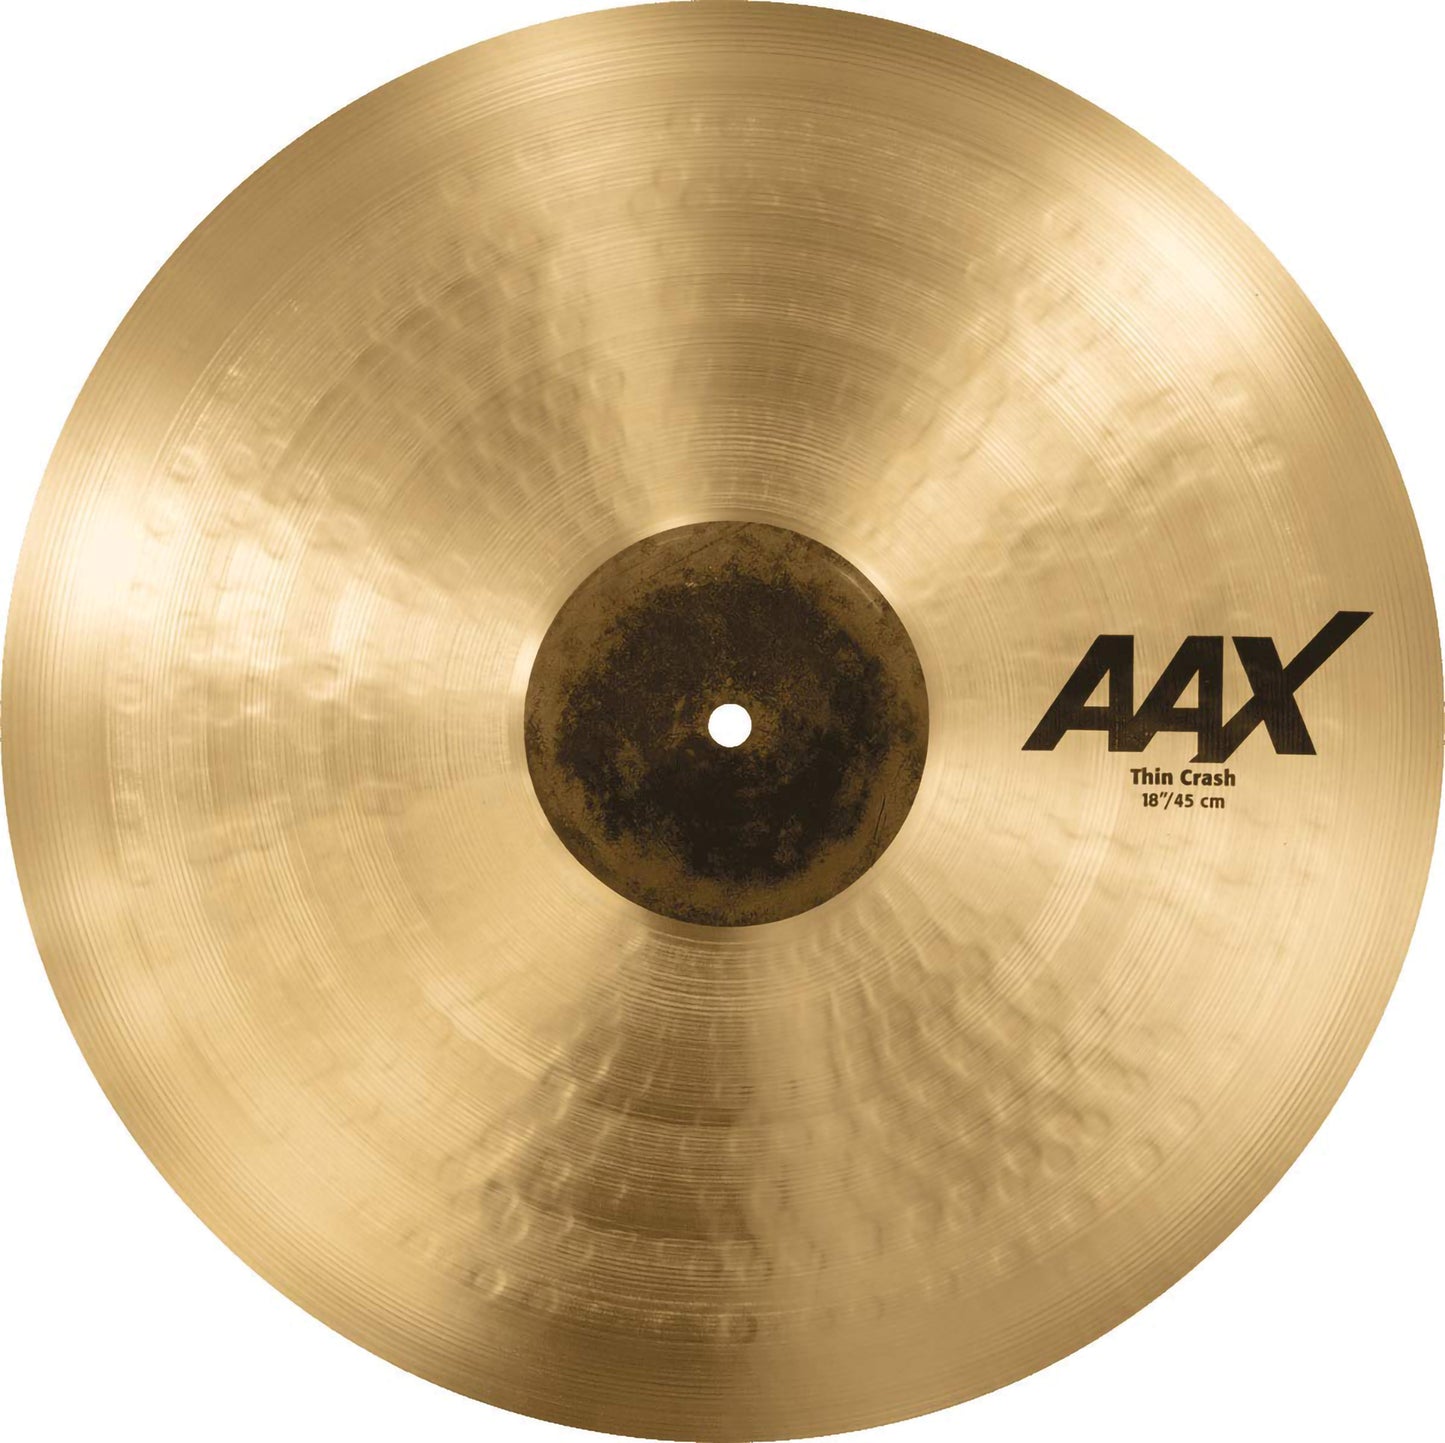 Sabian 18” AAX Thin Crash Cymbal